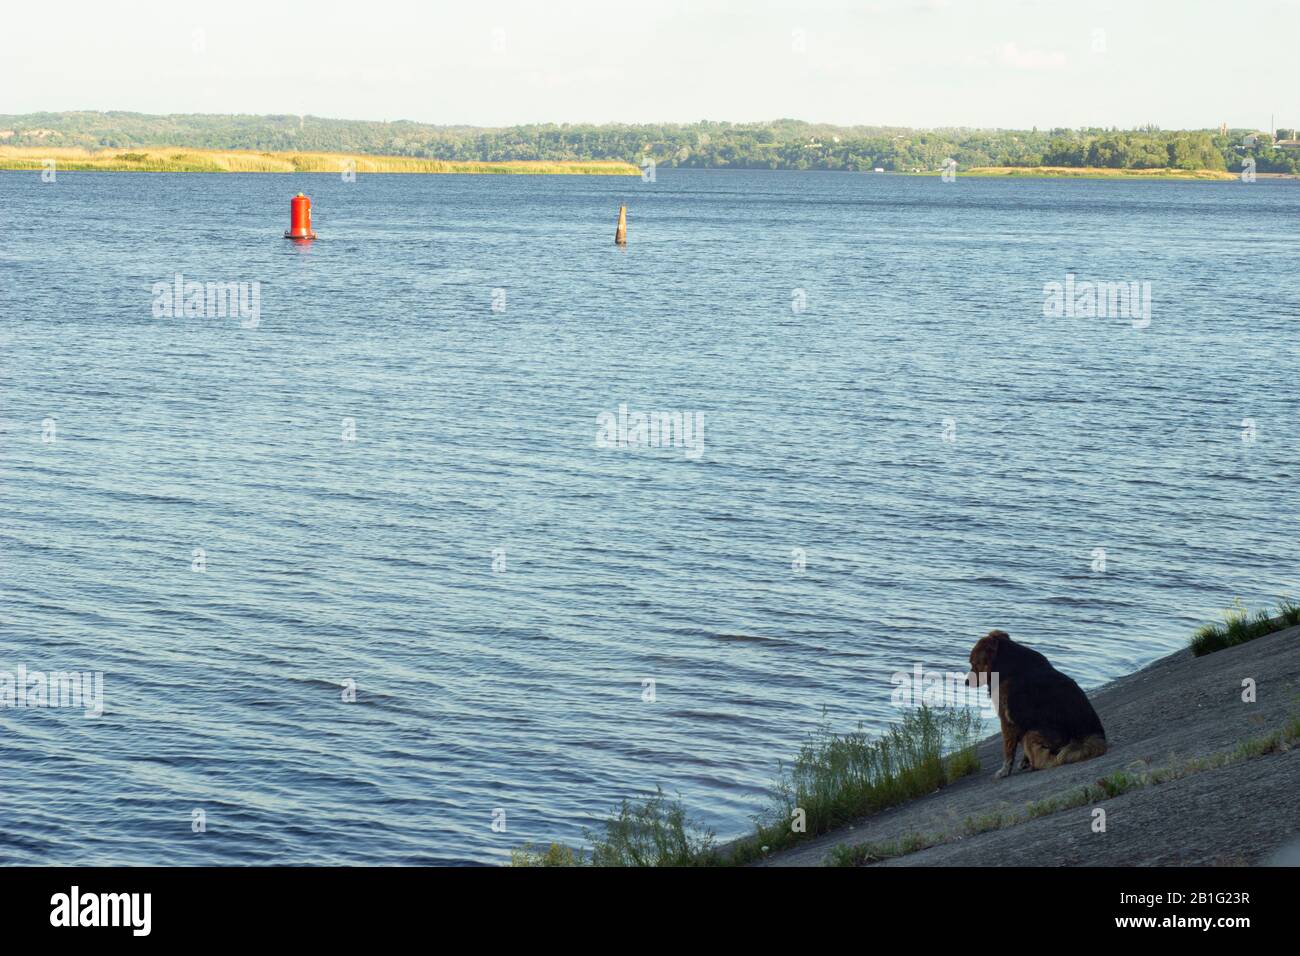 Un cane solitario mongrel sta aspettando un maestro e guardando l'acqua. Concetto - solitudine, dedizione, speranza per il futuro migliore o ricordare il passato Foto Stock